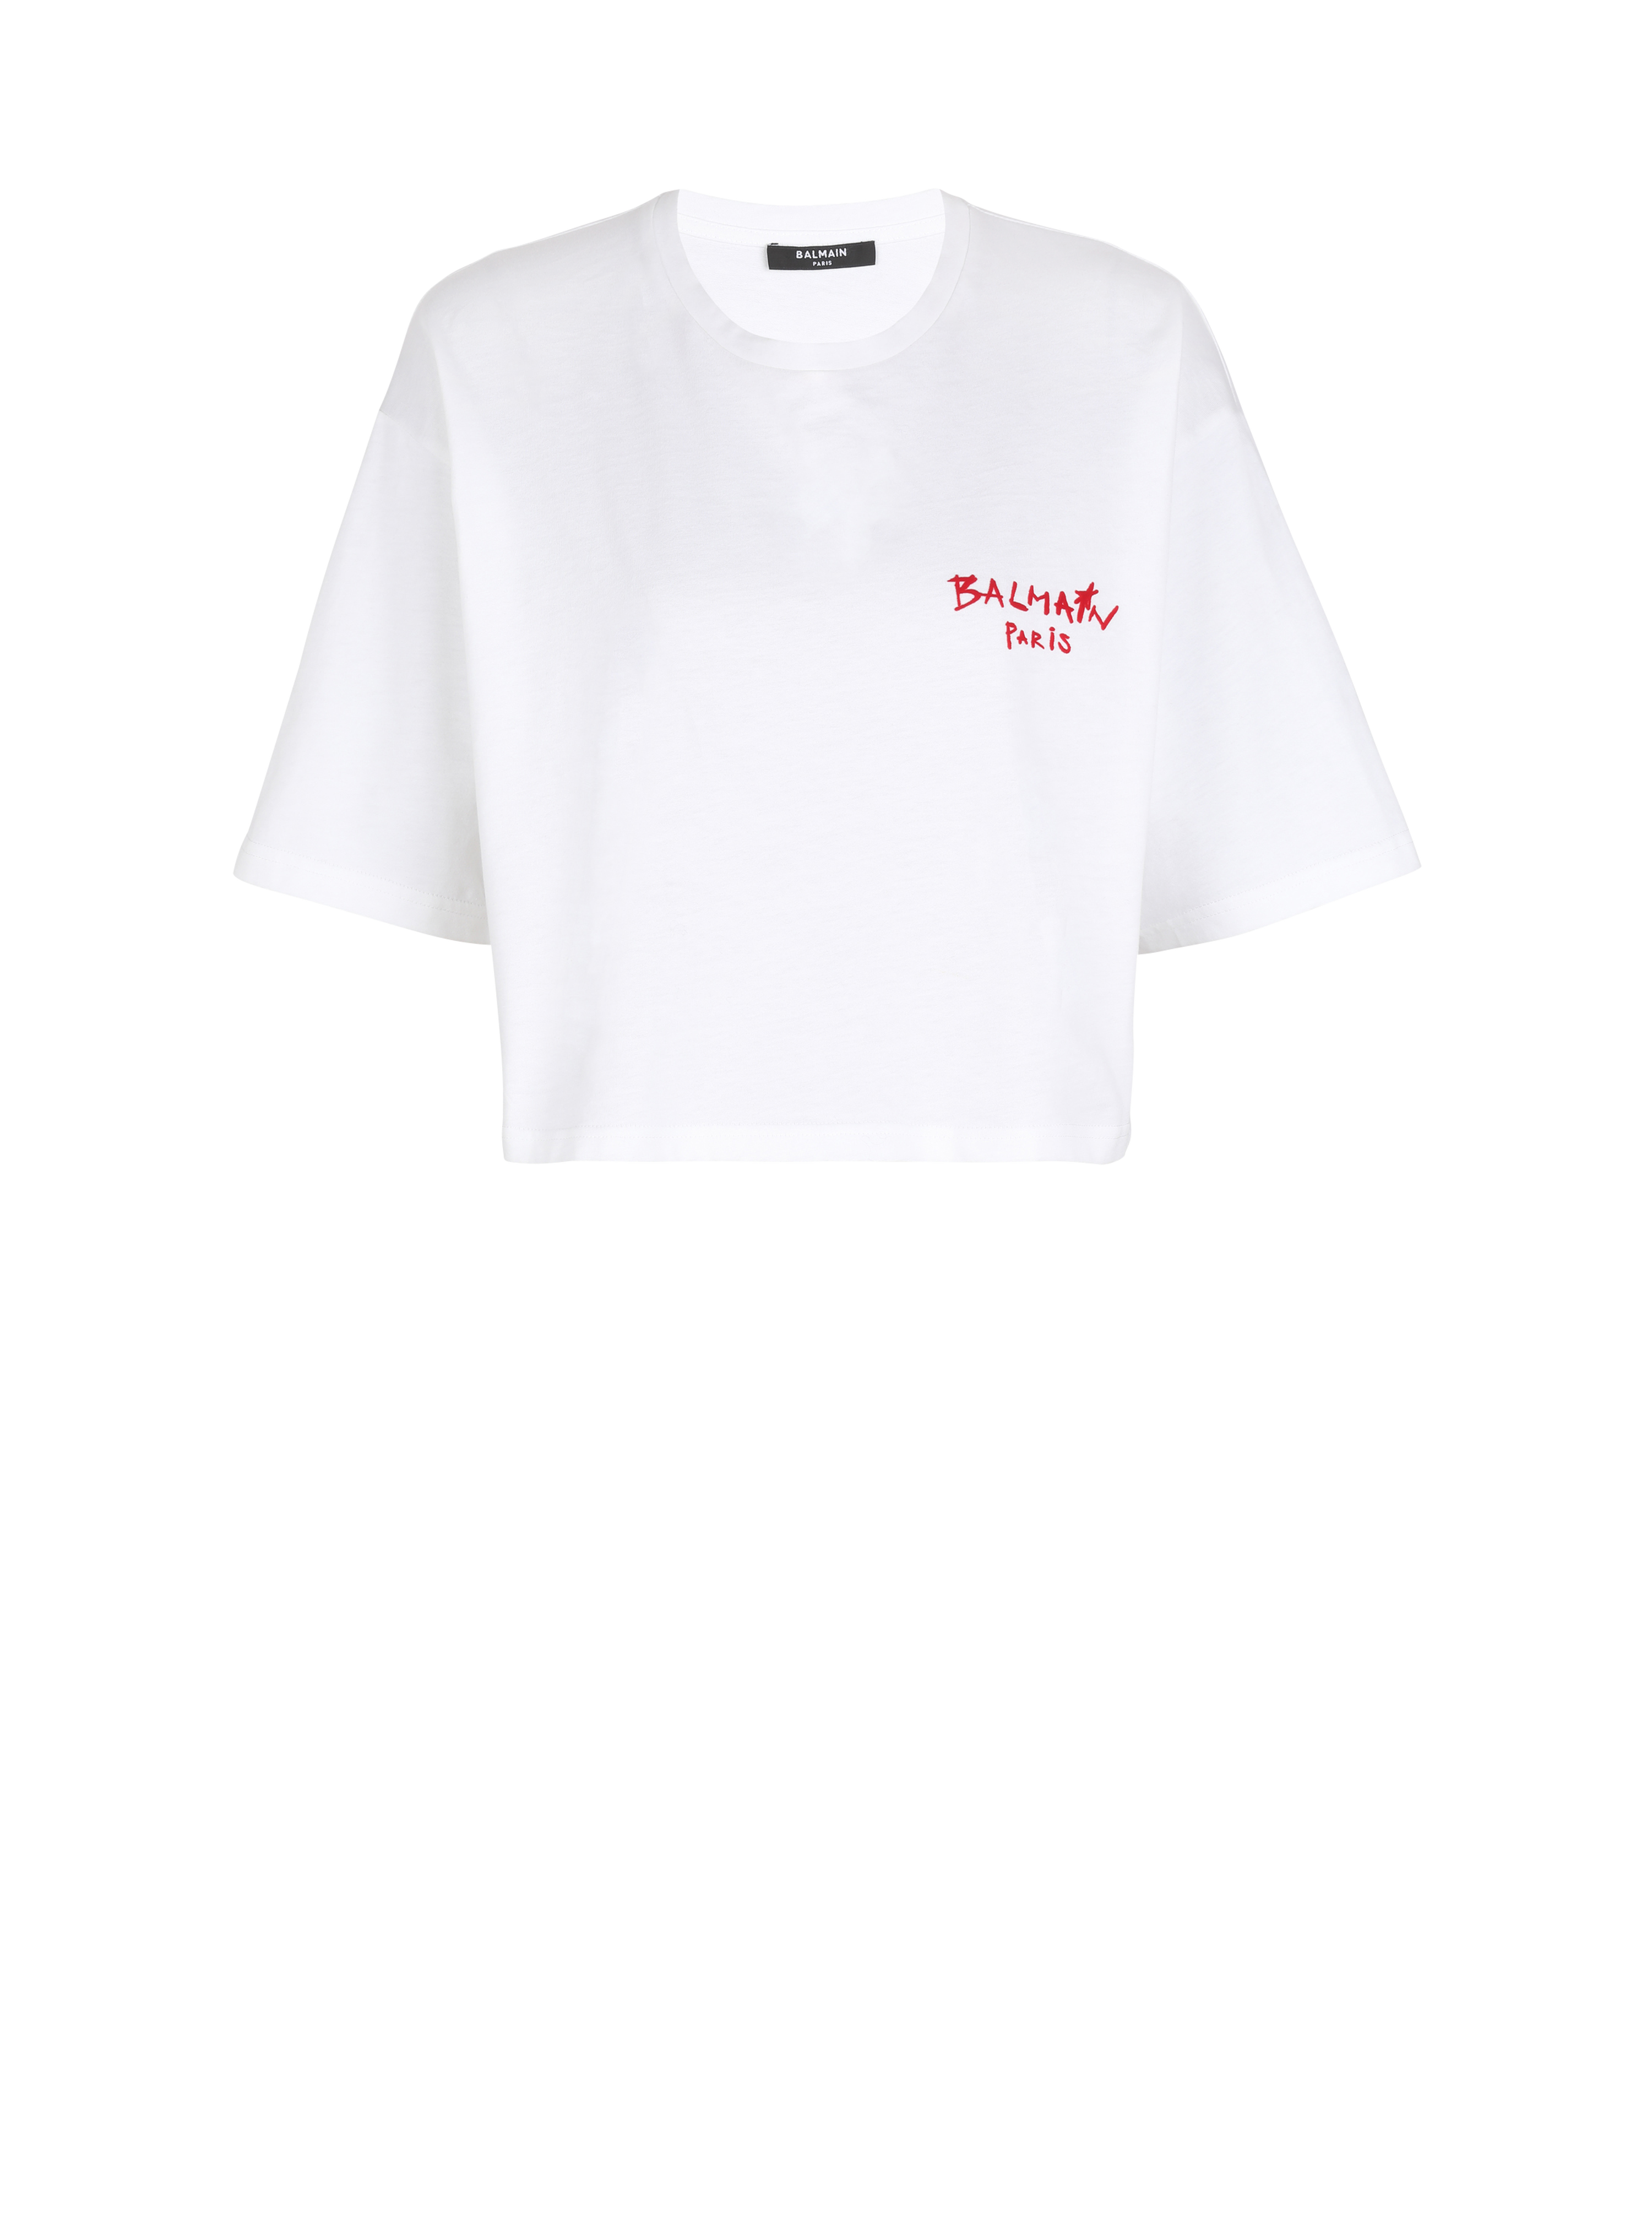 T-shirt corta in cotone con piccolo logo Balmain graffiti floccato, bianco